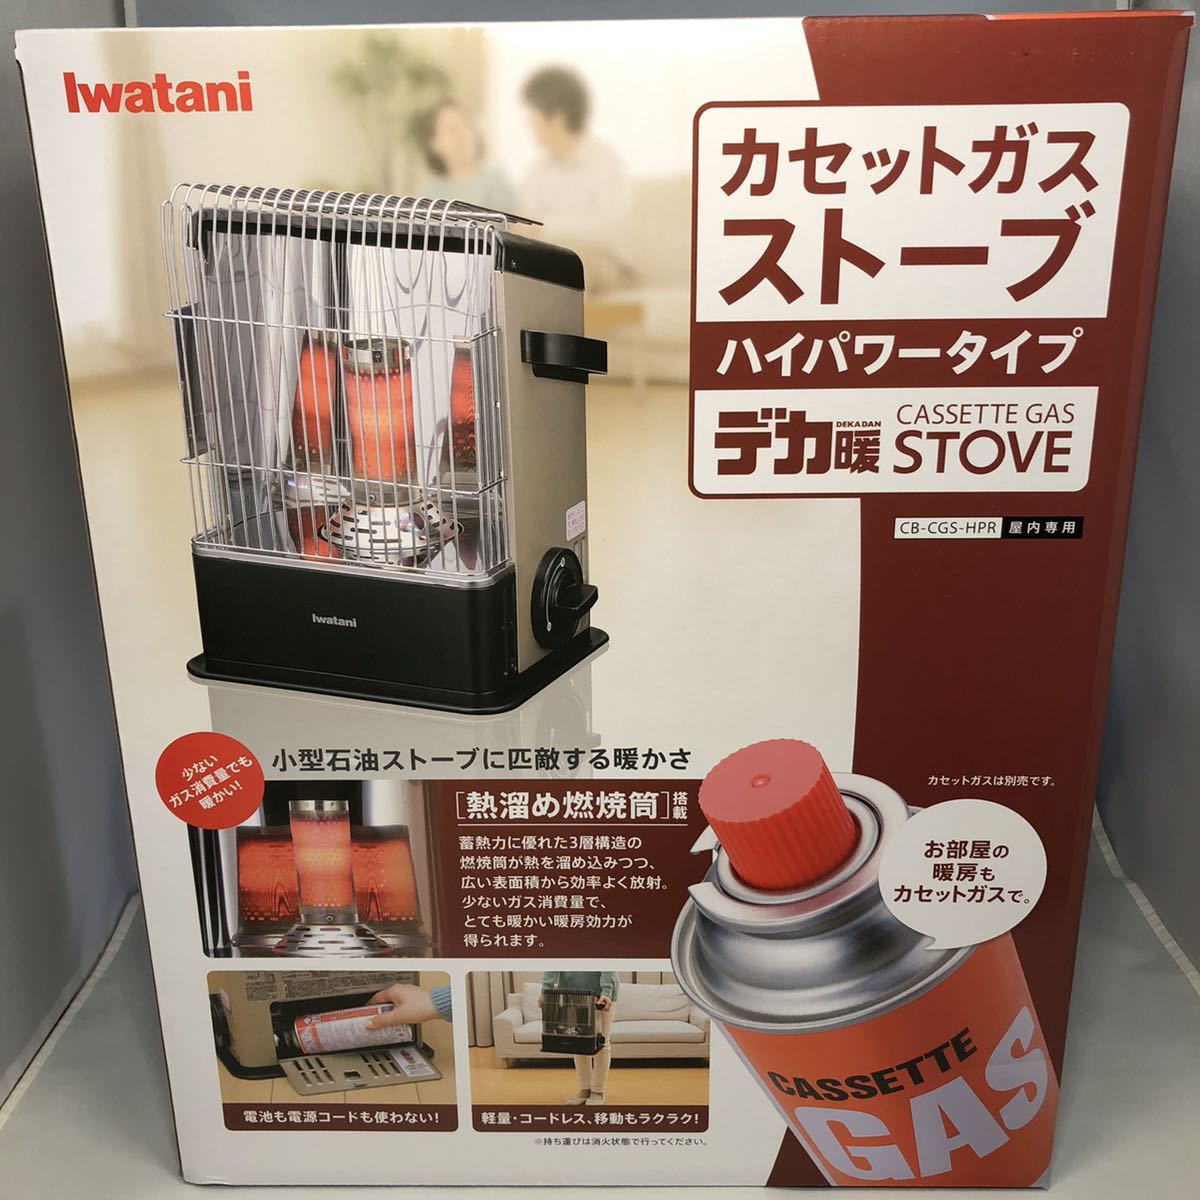 公式の  イワタニ Iwatani 新品 カセットガスストーブ CB-CGS-HPR デカ暖 ハイパワータイプ ガスストーブ